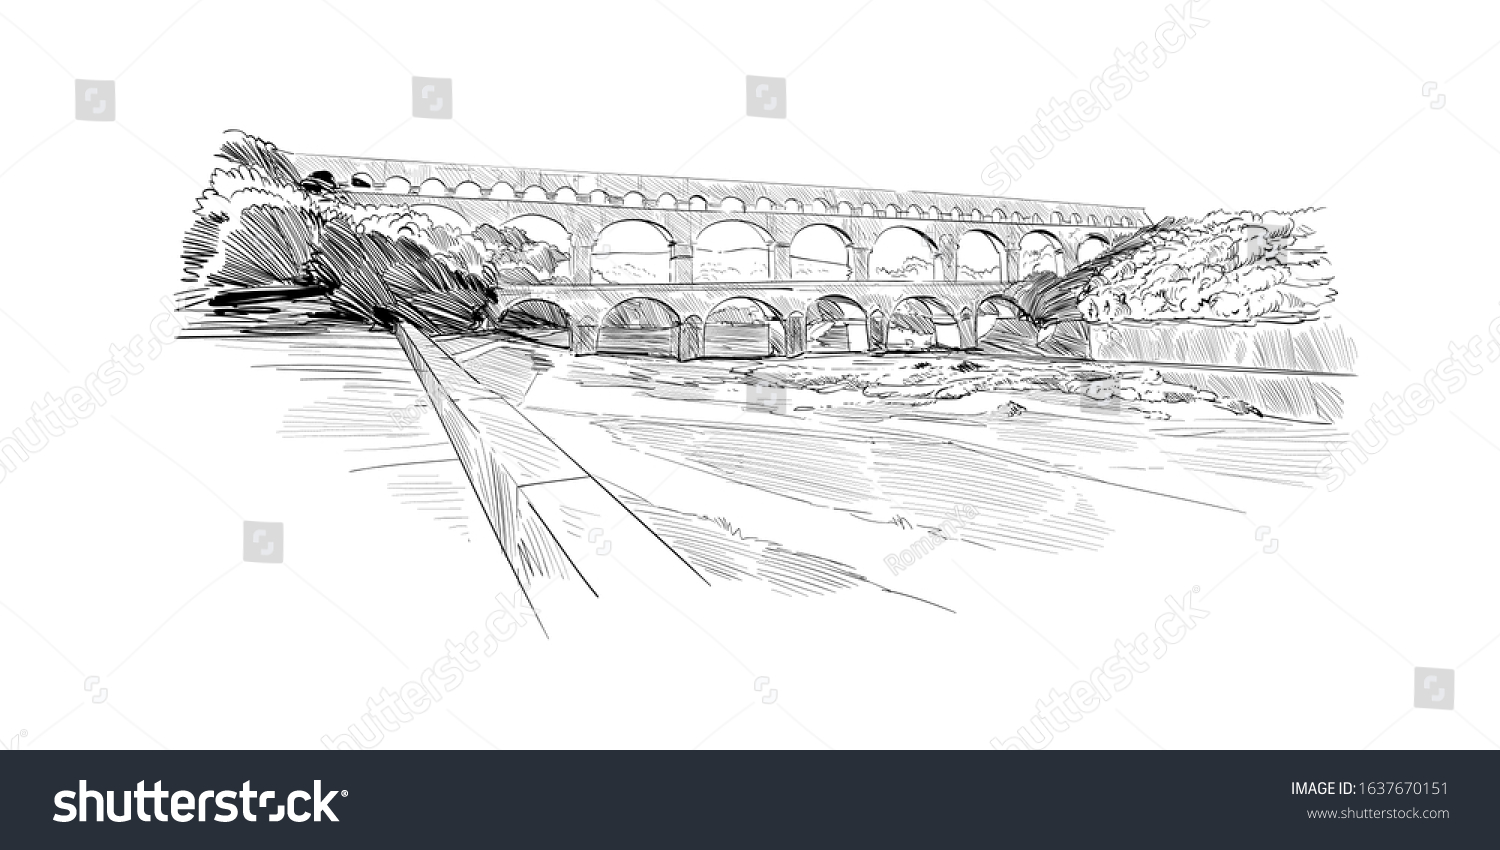 SVG of Pont du gard aqueduct. France. Historic architecture. Hand drawn sketch. Vector illustration. svg